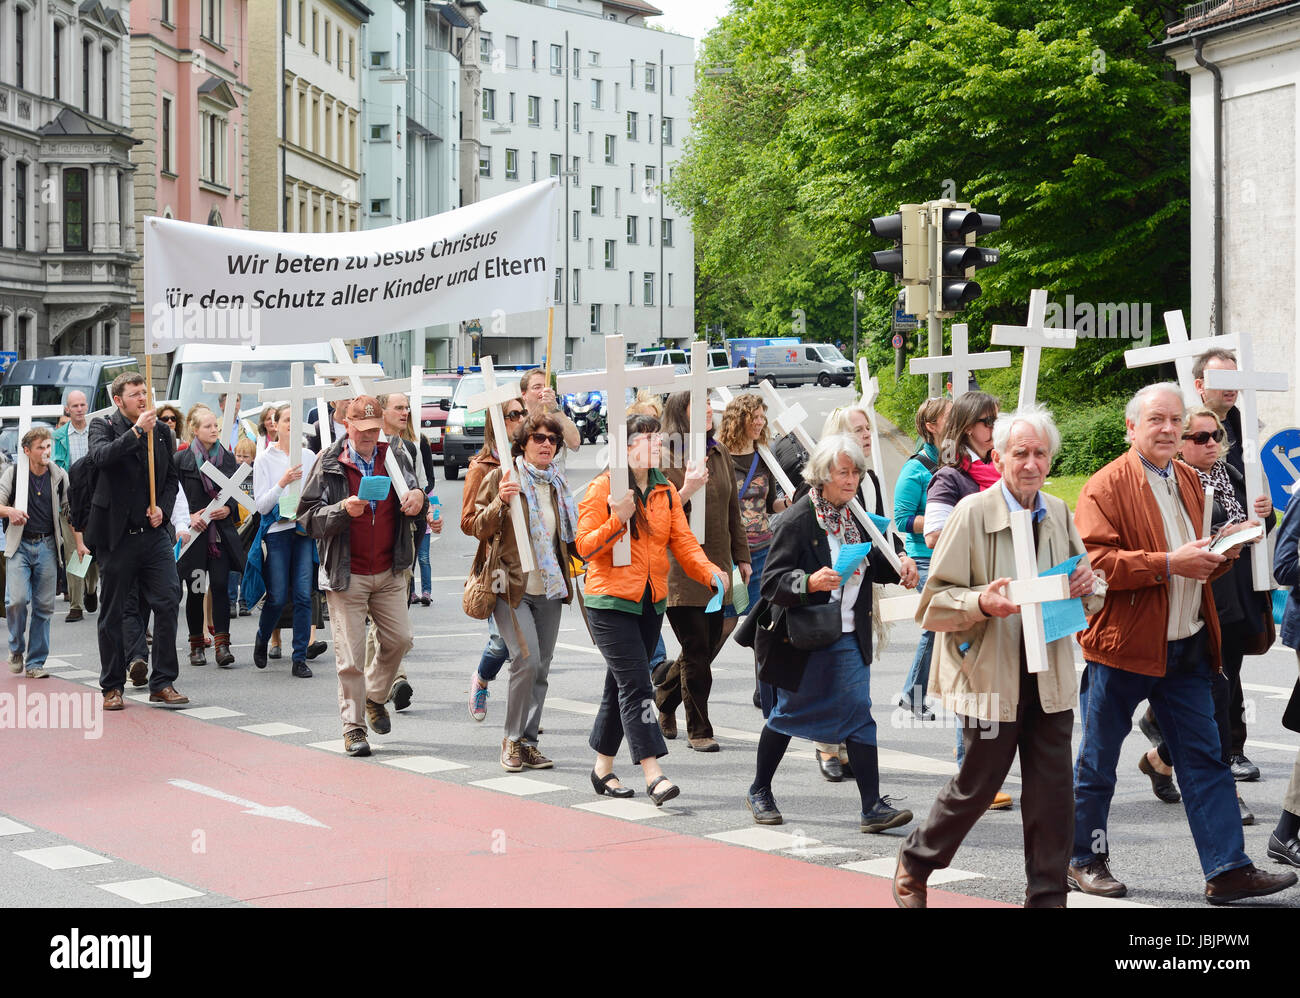 München, Deutschland – 10. Mai 2014: Anti-Abtreibungs-Demonstration mit Teilnehmer tragen christliche Kreuze und Fahnen.  Hunderte protestierten friedlich in München. Stockfoto